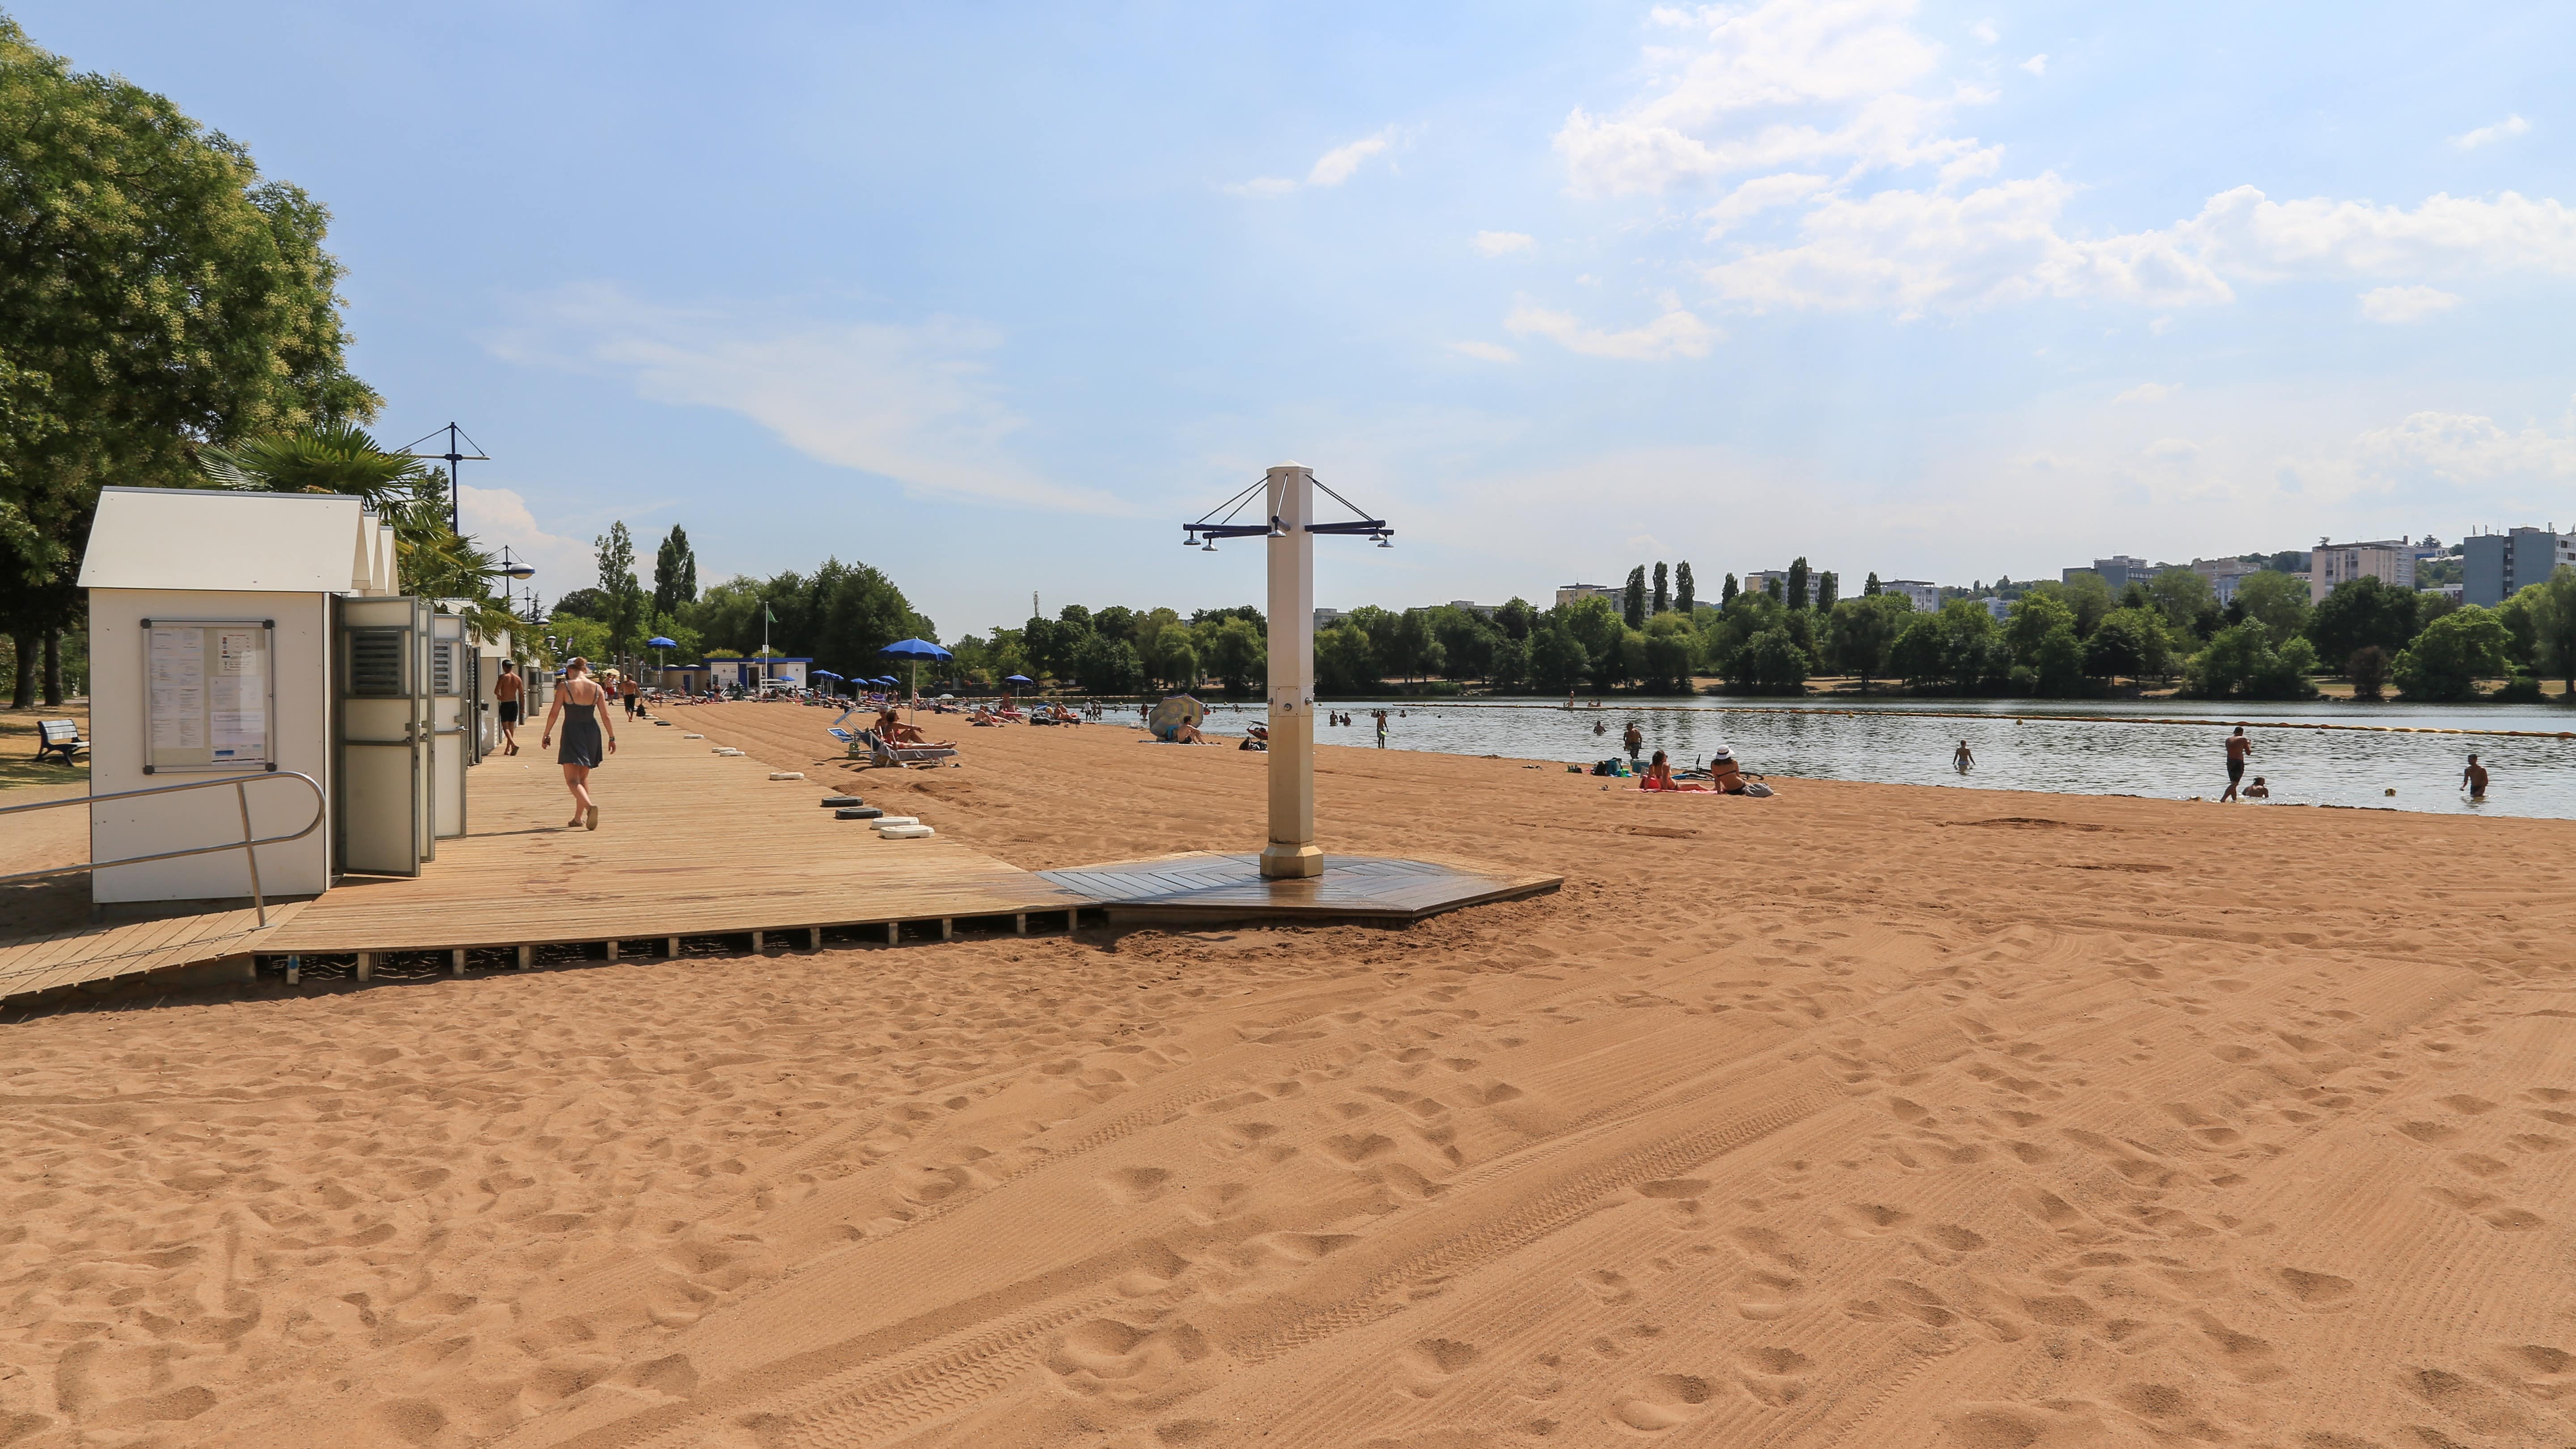 Panorama sur les étendues de sable entourant le lac Kir à Dijon